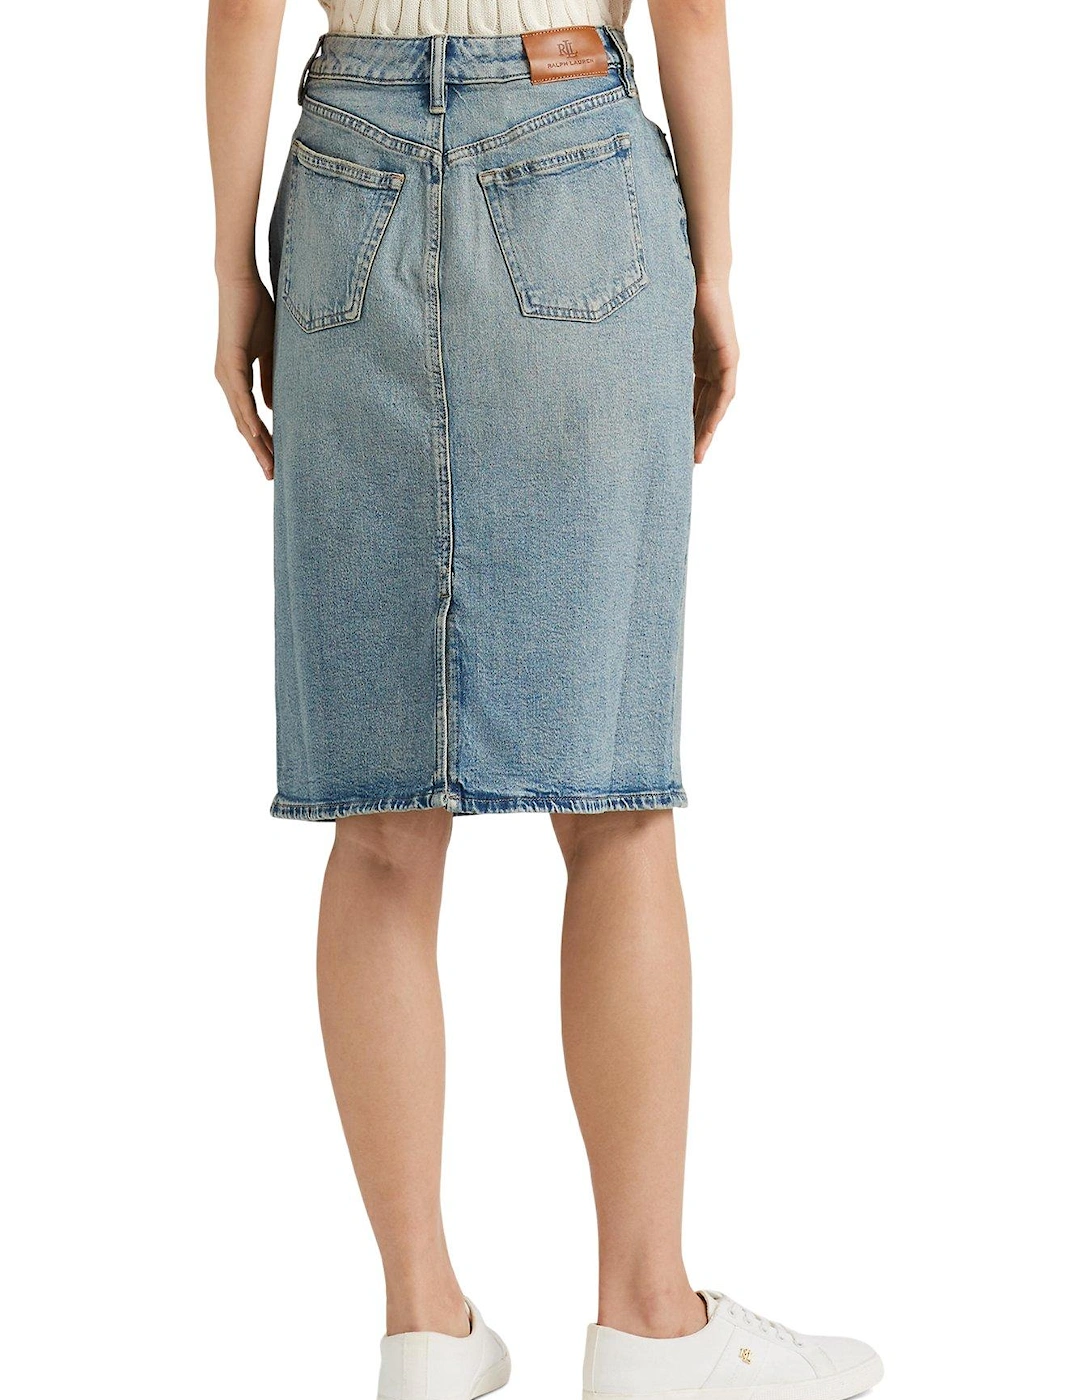 Daniela-knee-length Denim Skirt - Salt Creek Wash